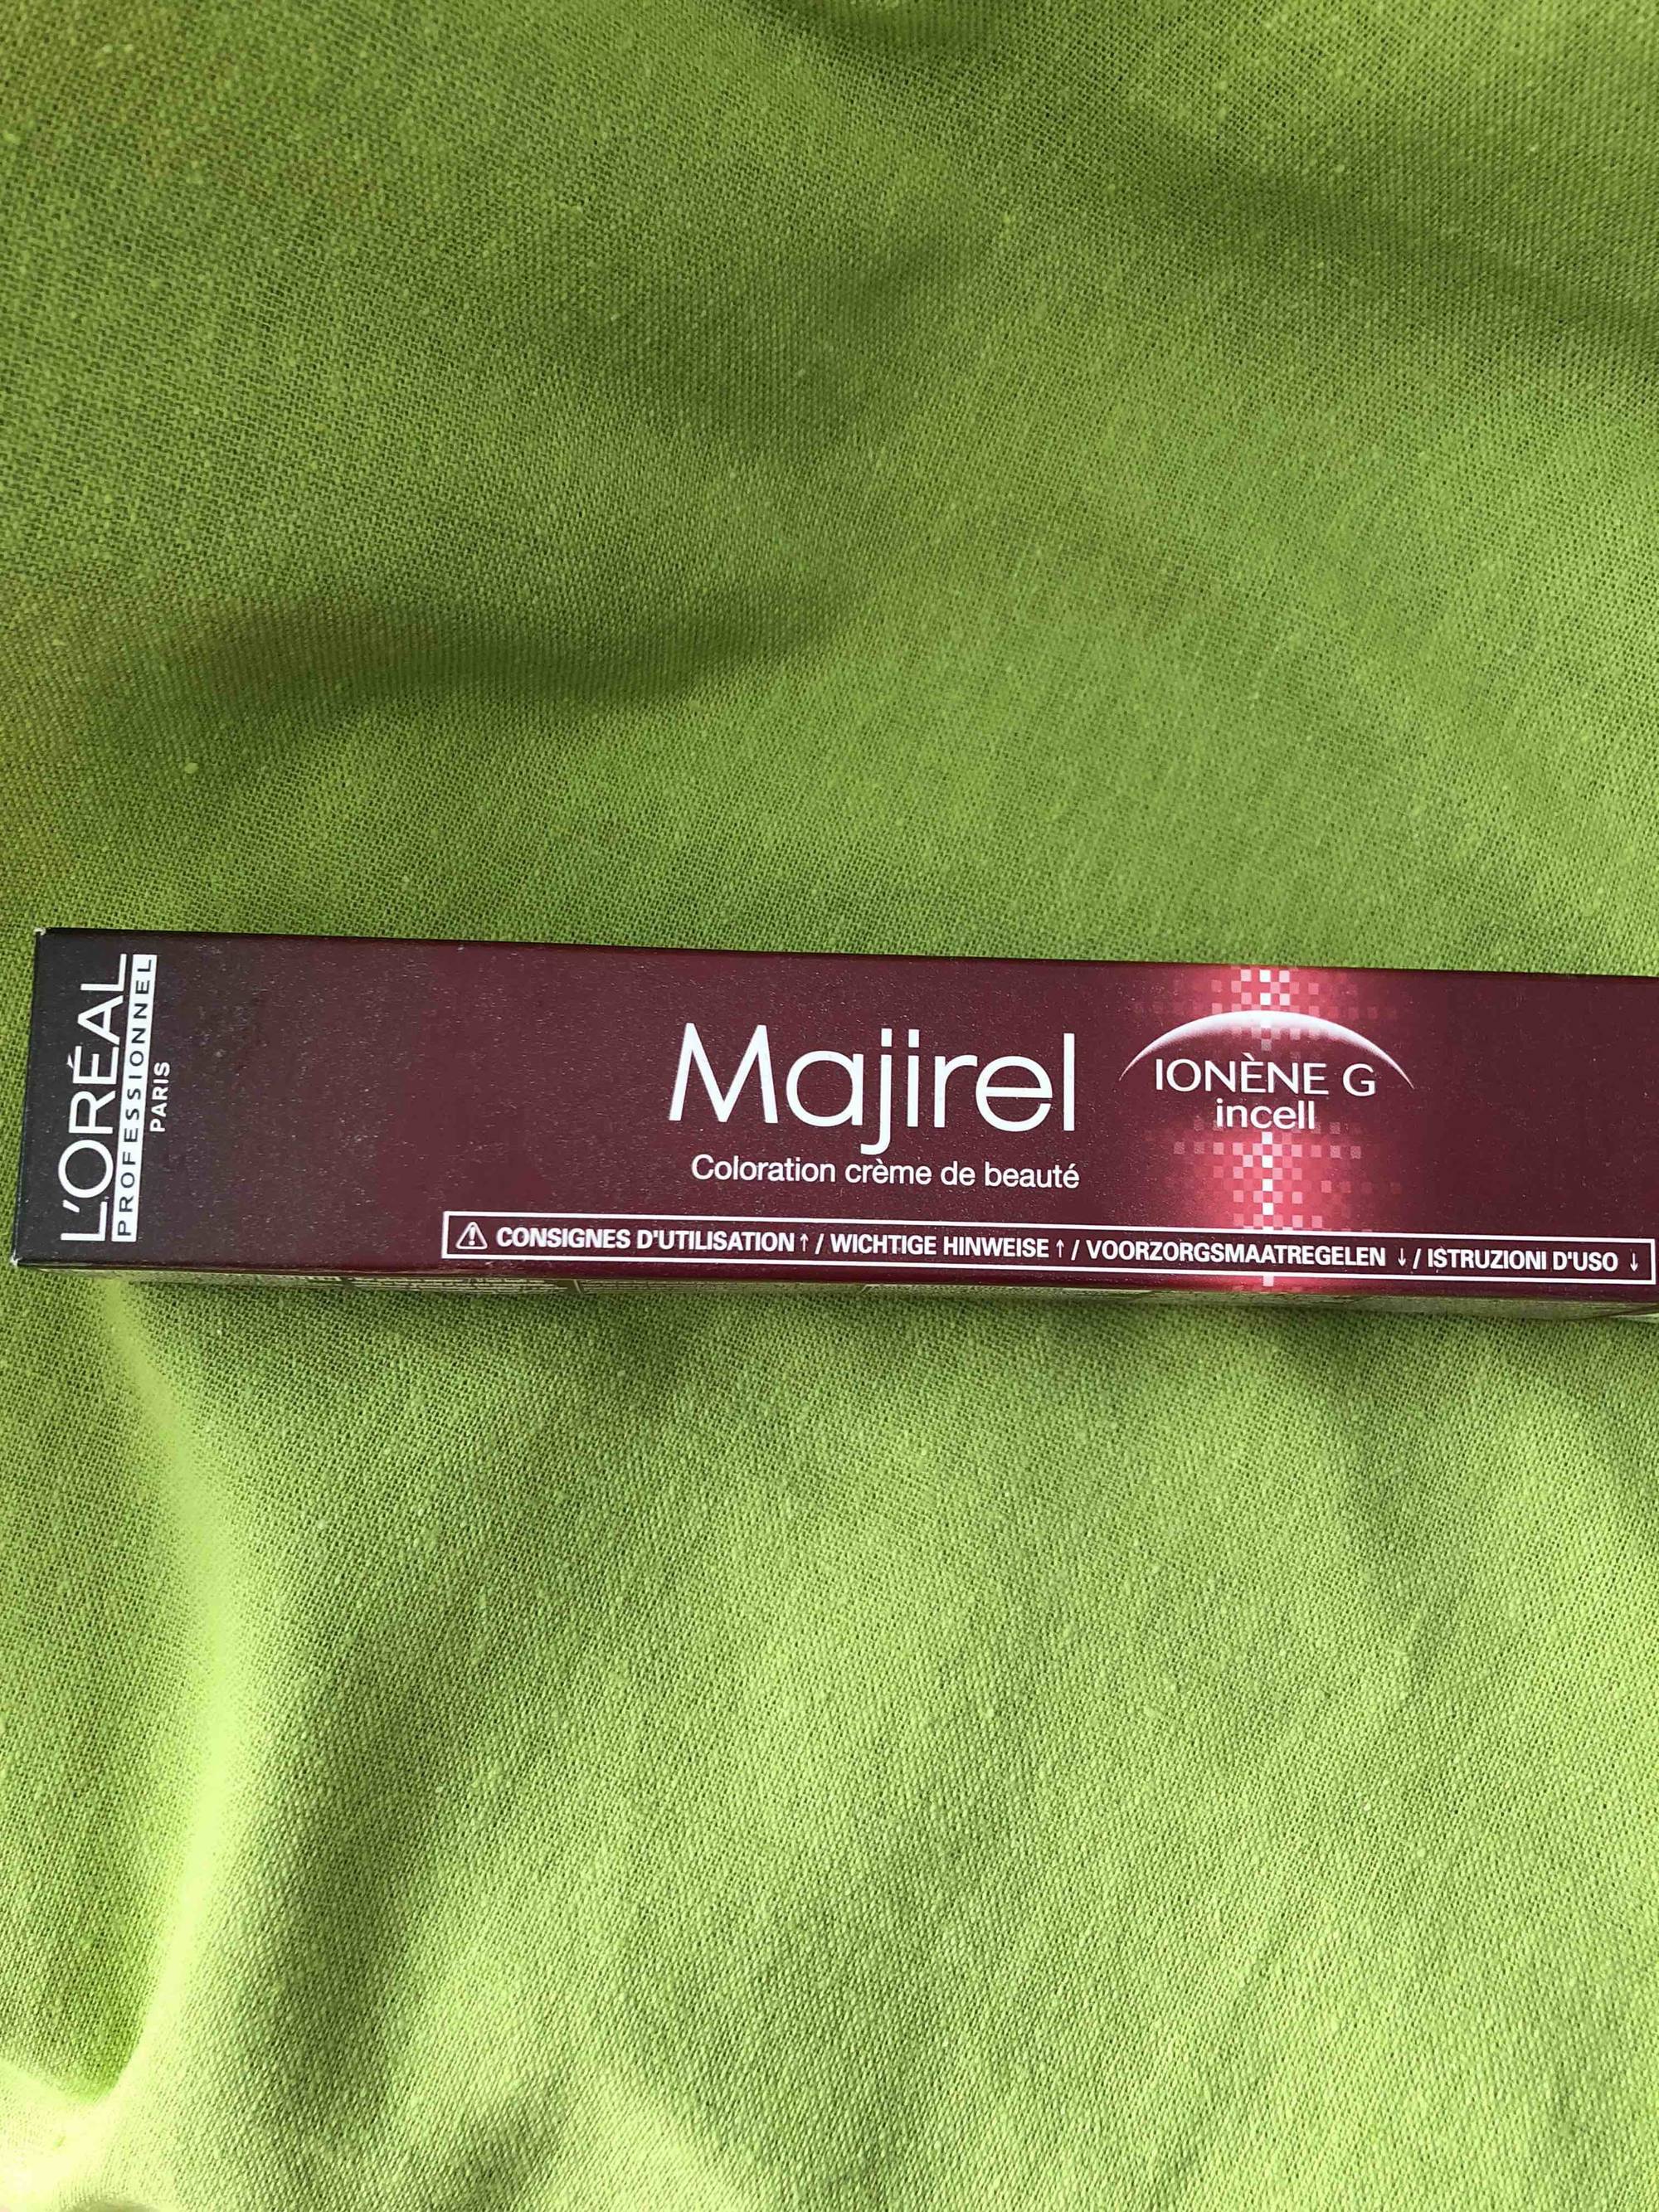 L'ORÉAL - Majirel - Coloration crème de beauté Ionène G incell